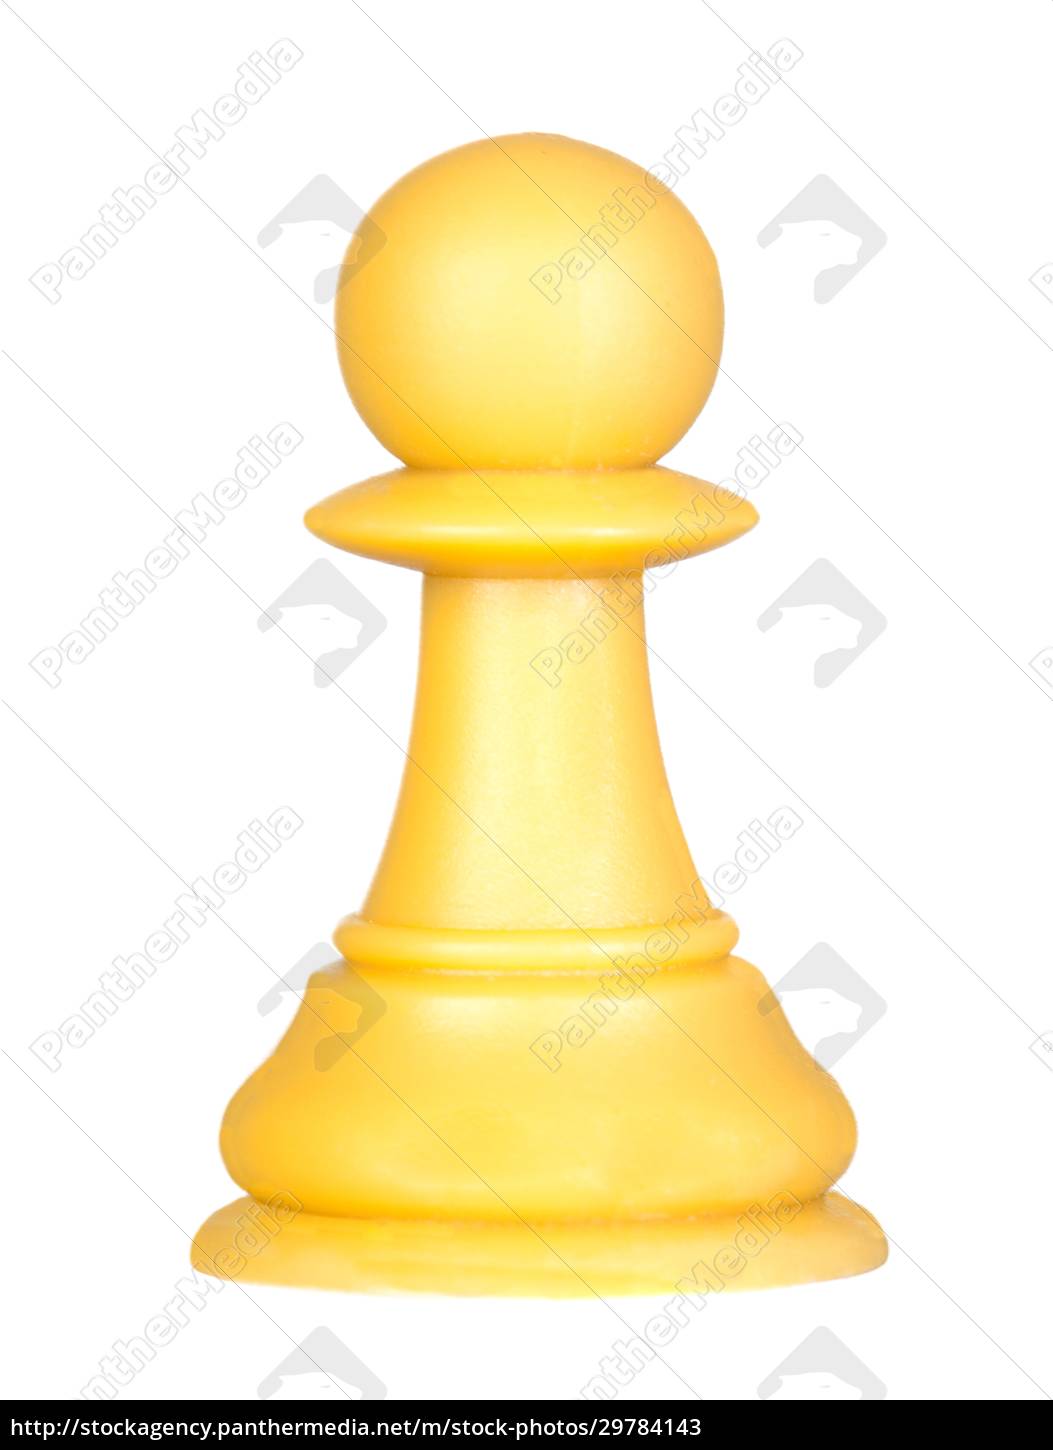 Peão de xadrez branco